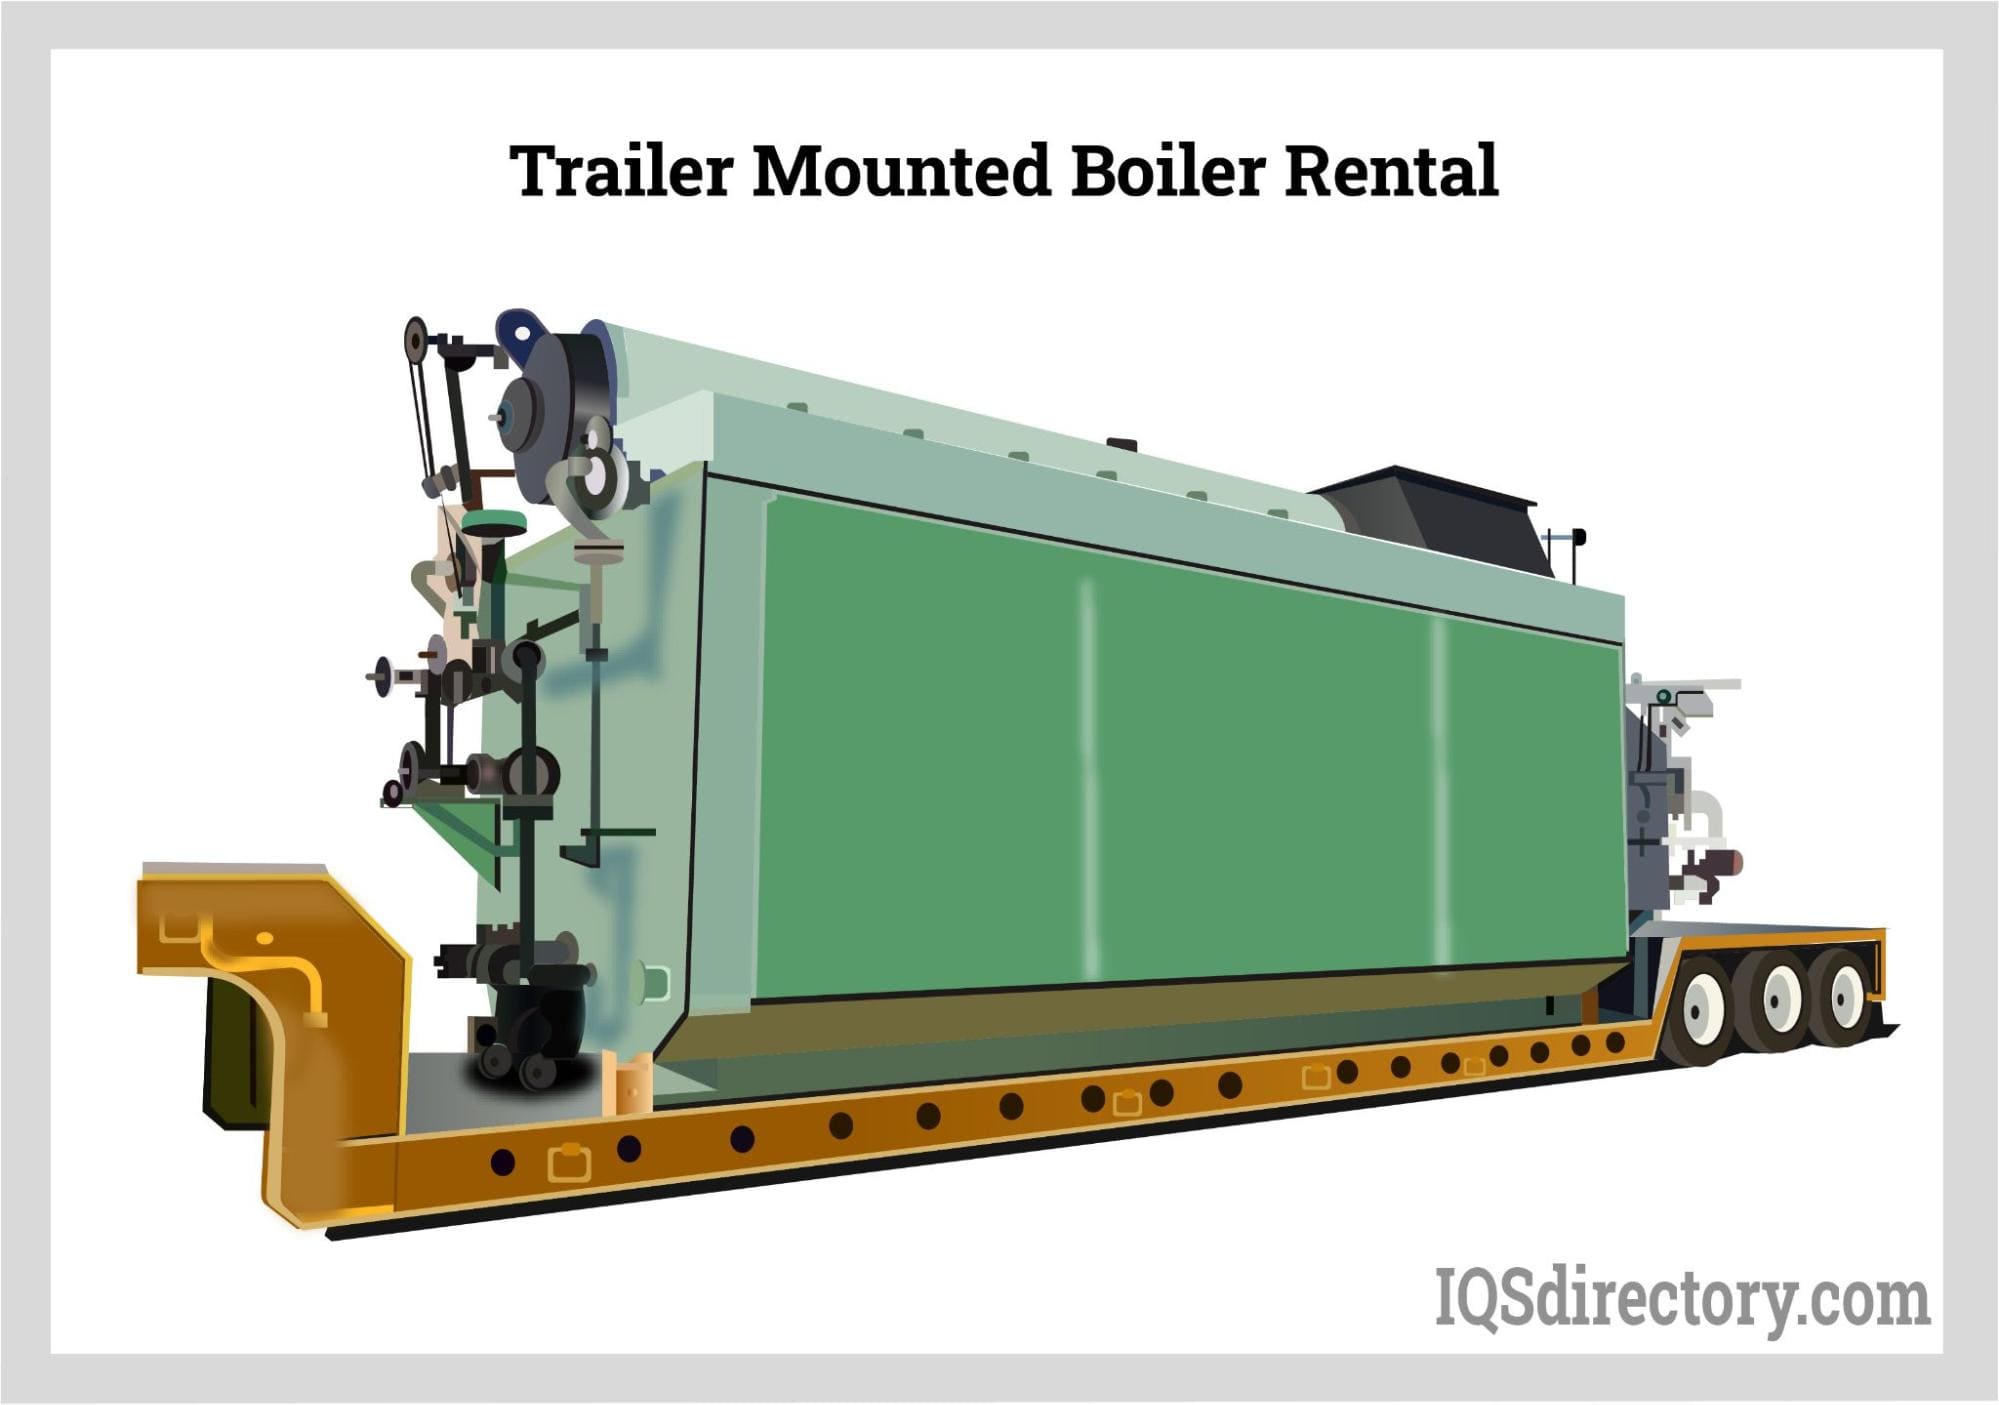 Trailer Mounted Boiler Rental